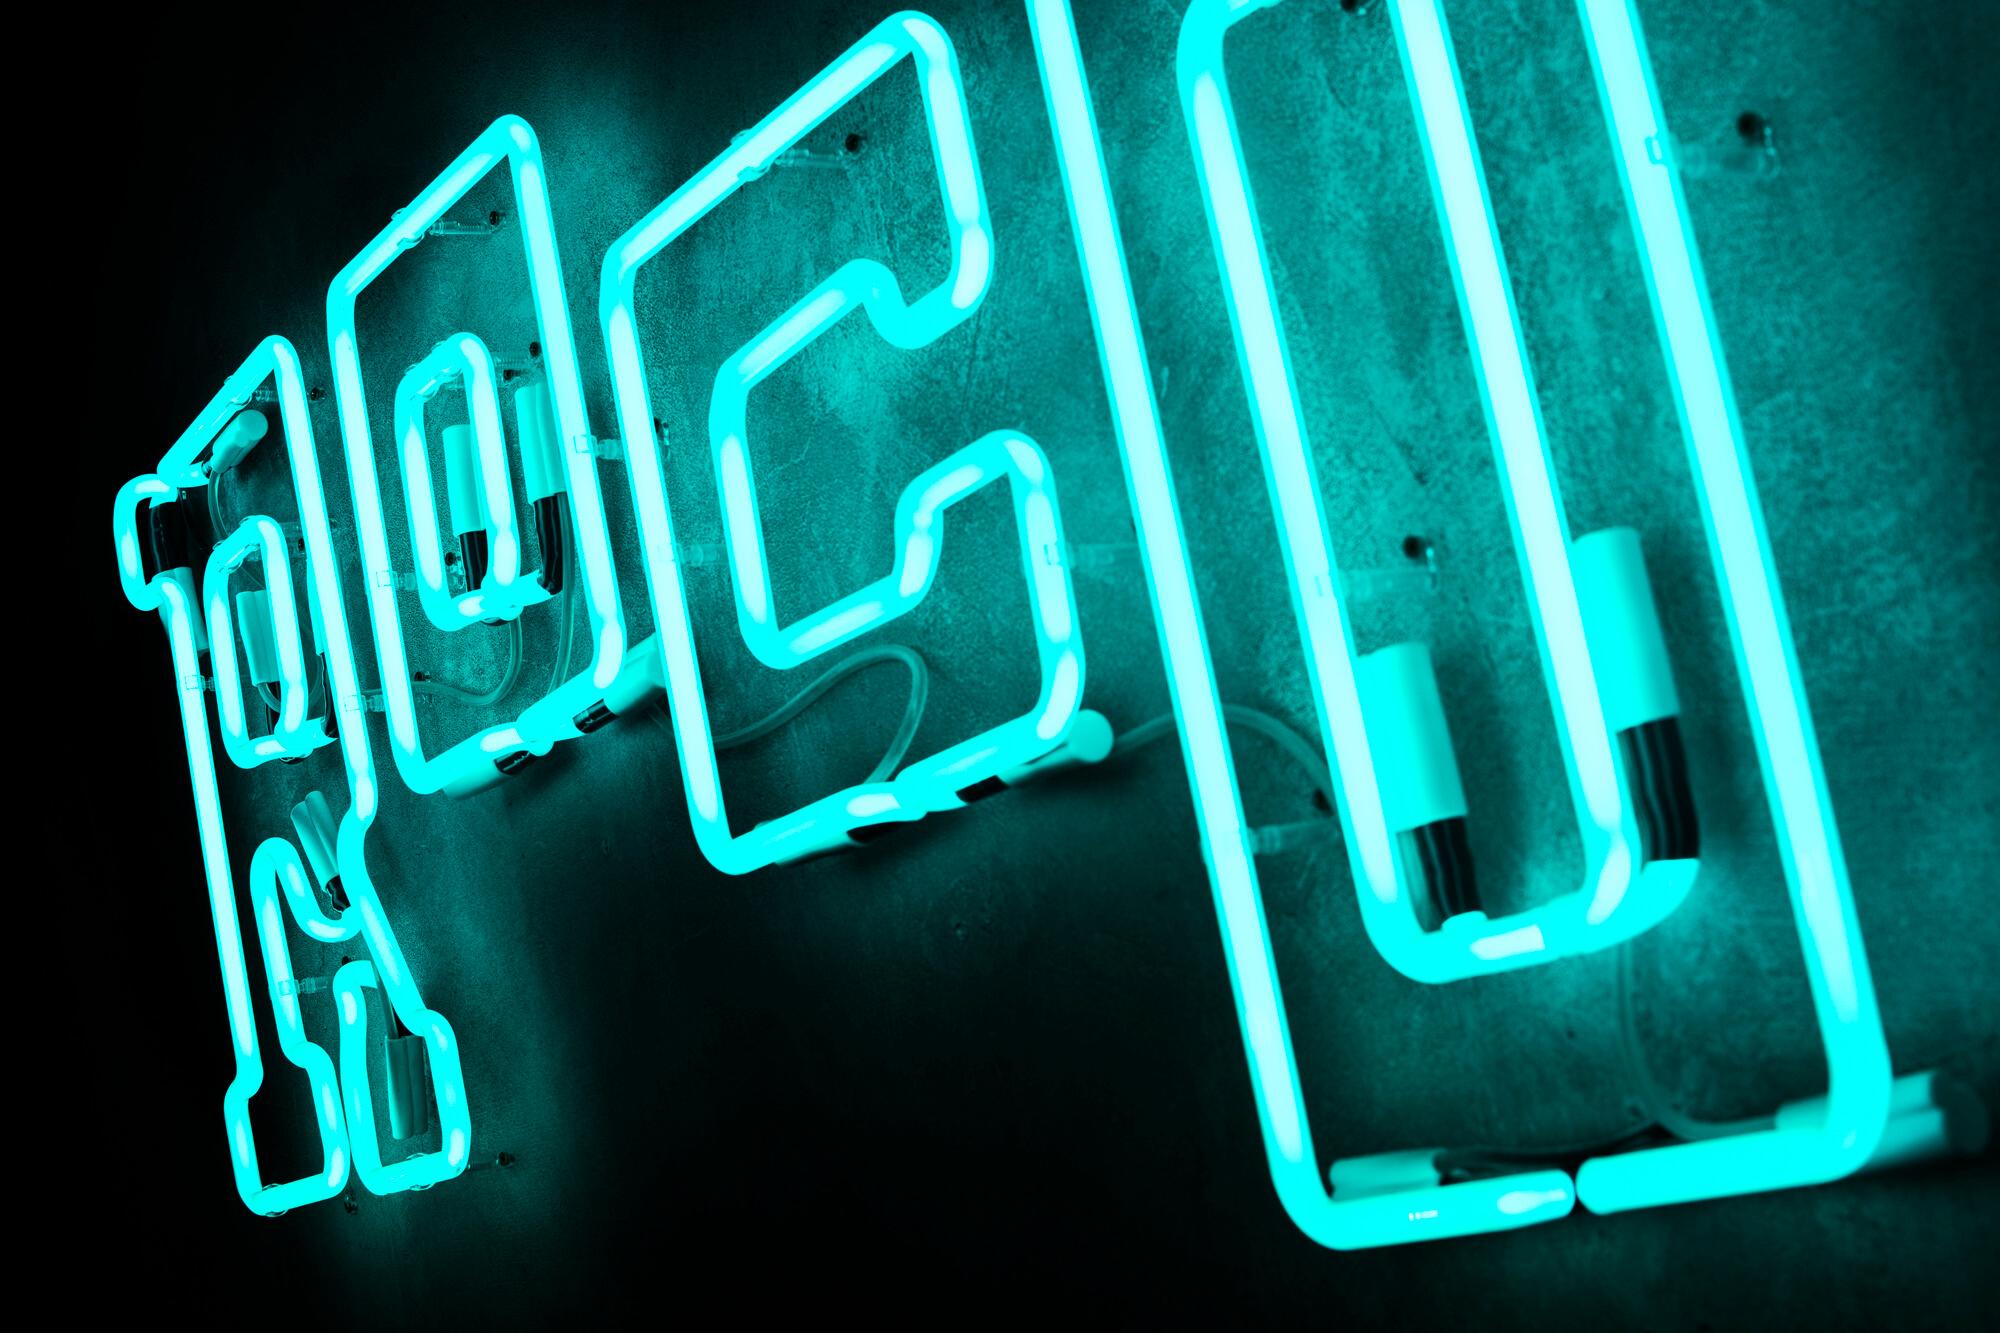 neon-rocotillo-neon-op-de-wand-in-restaurant-neon-aan-de-wand-neon-over-tafels-neon-sublighted-neon-op-betonwand-neon-glas-neon-logobord